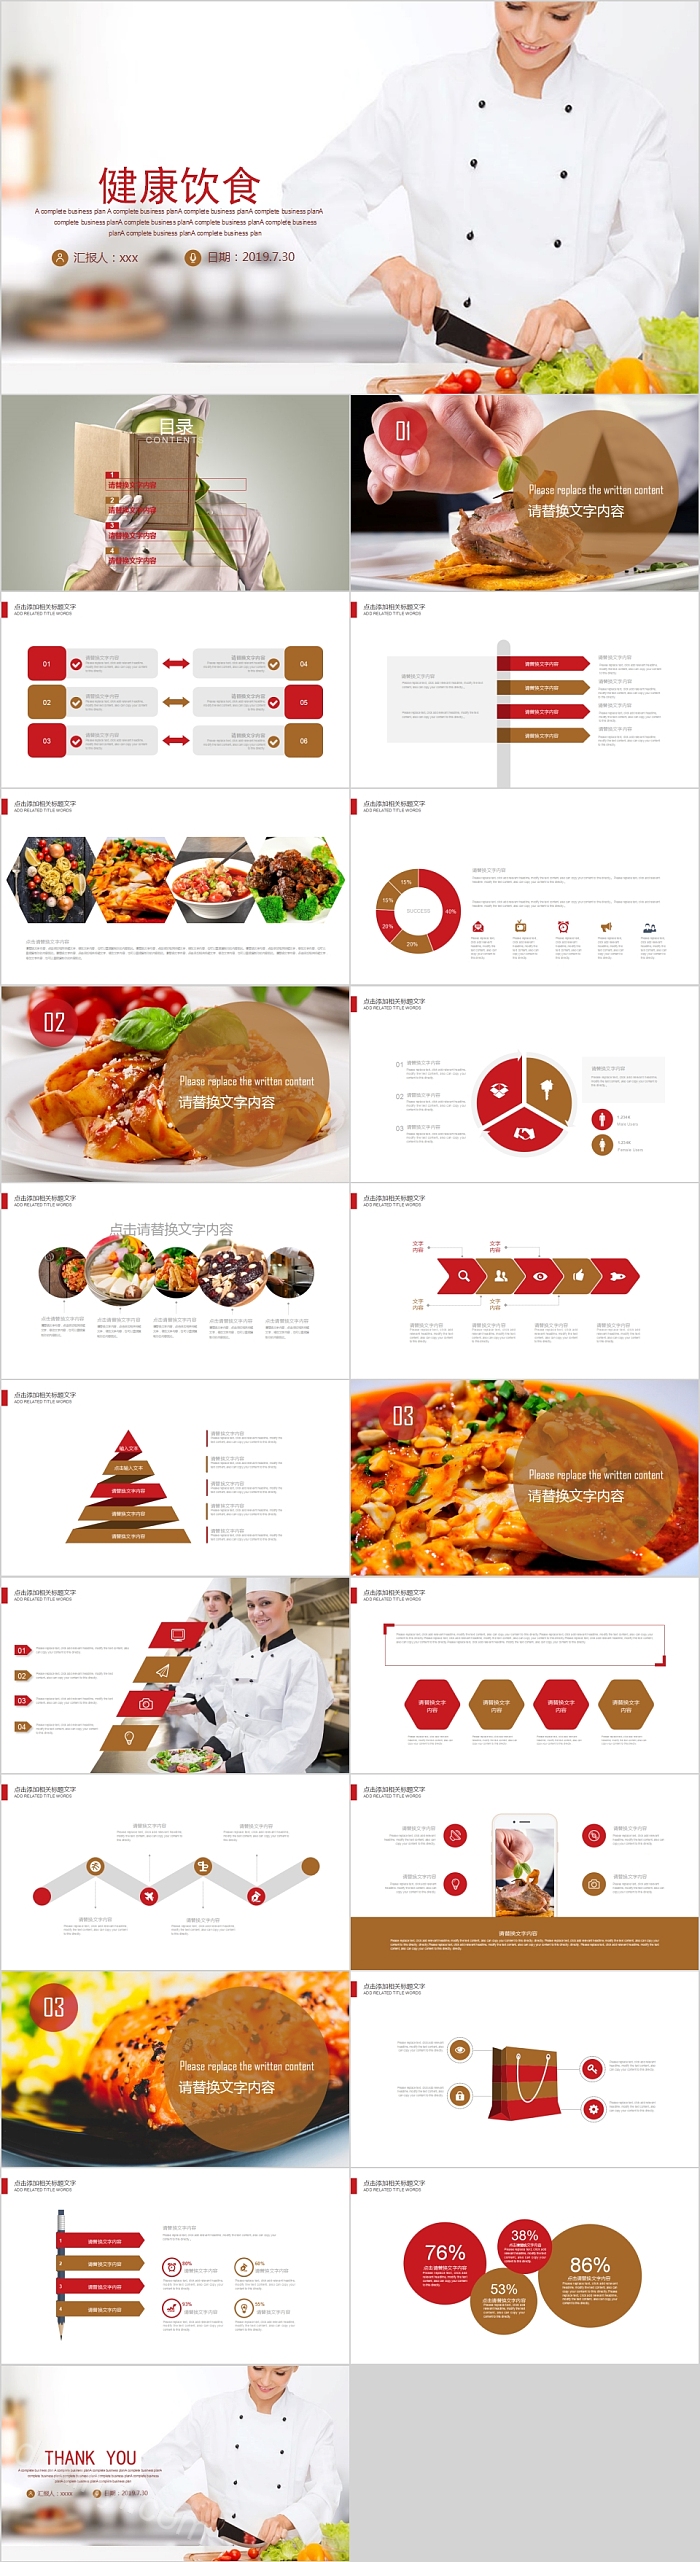 健康饮食中国美食餐饮招商宣传PPT模板